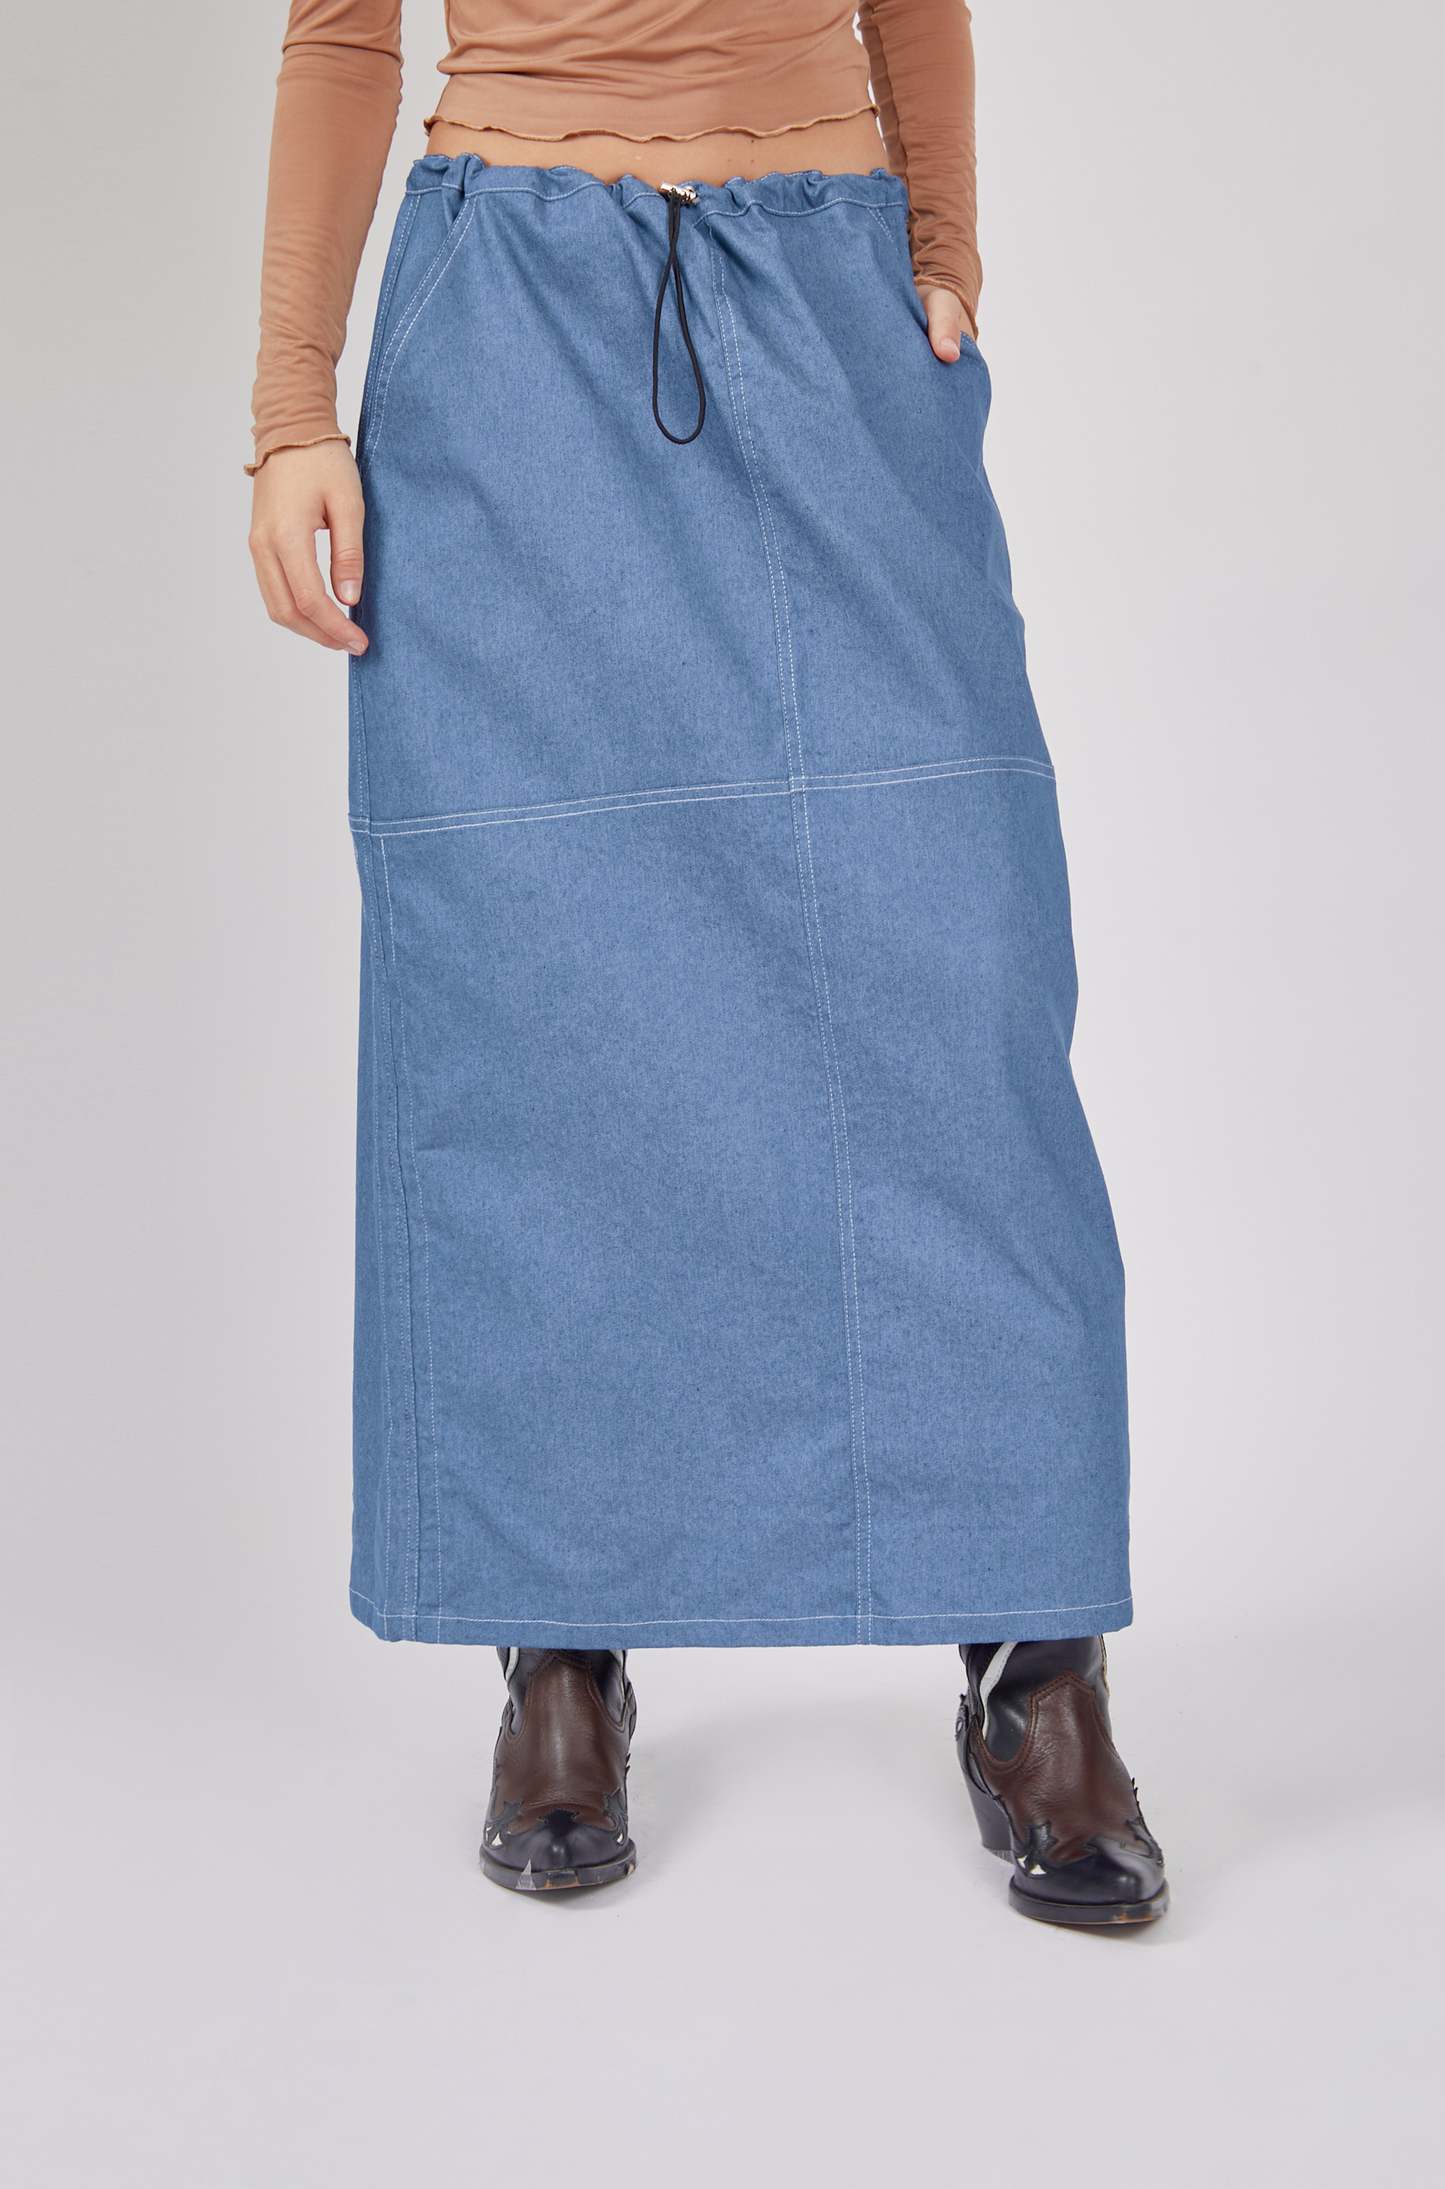 Falda denim larga - Azul claro